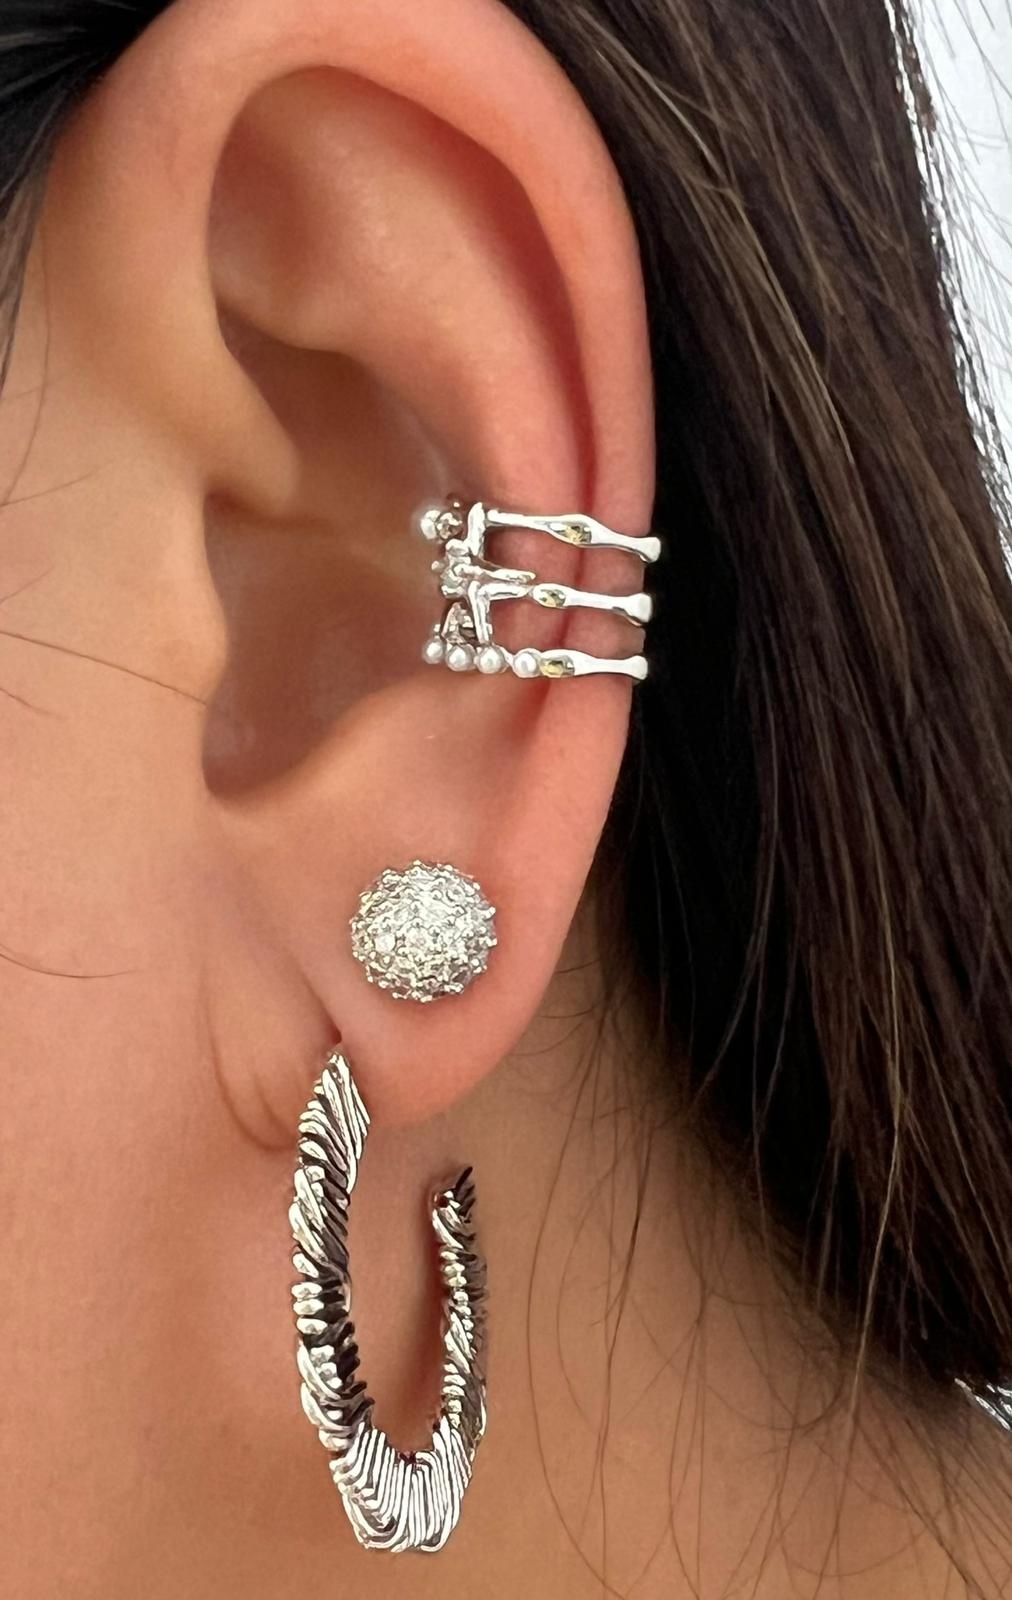 Elegant Ear Cuff with Zirconia Crystal